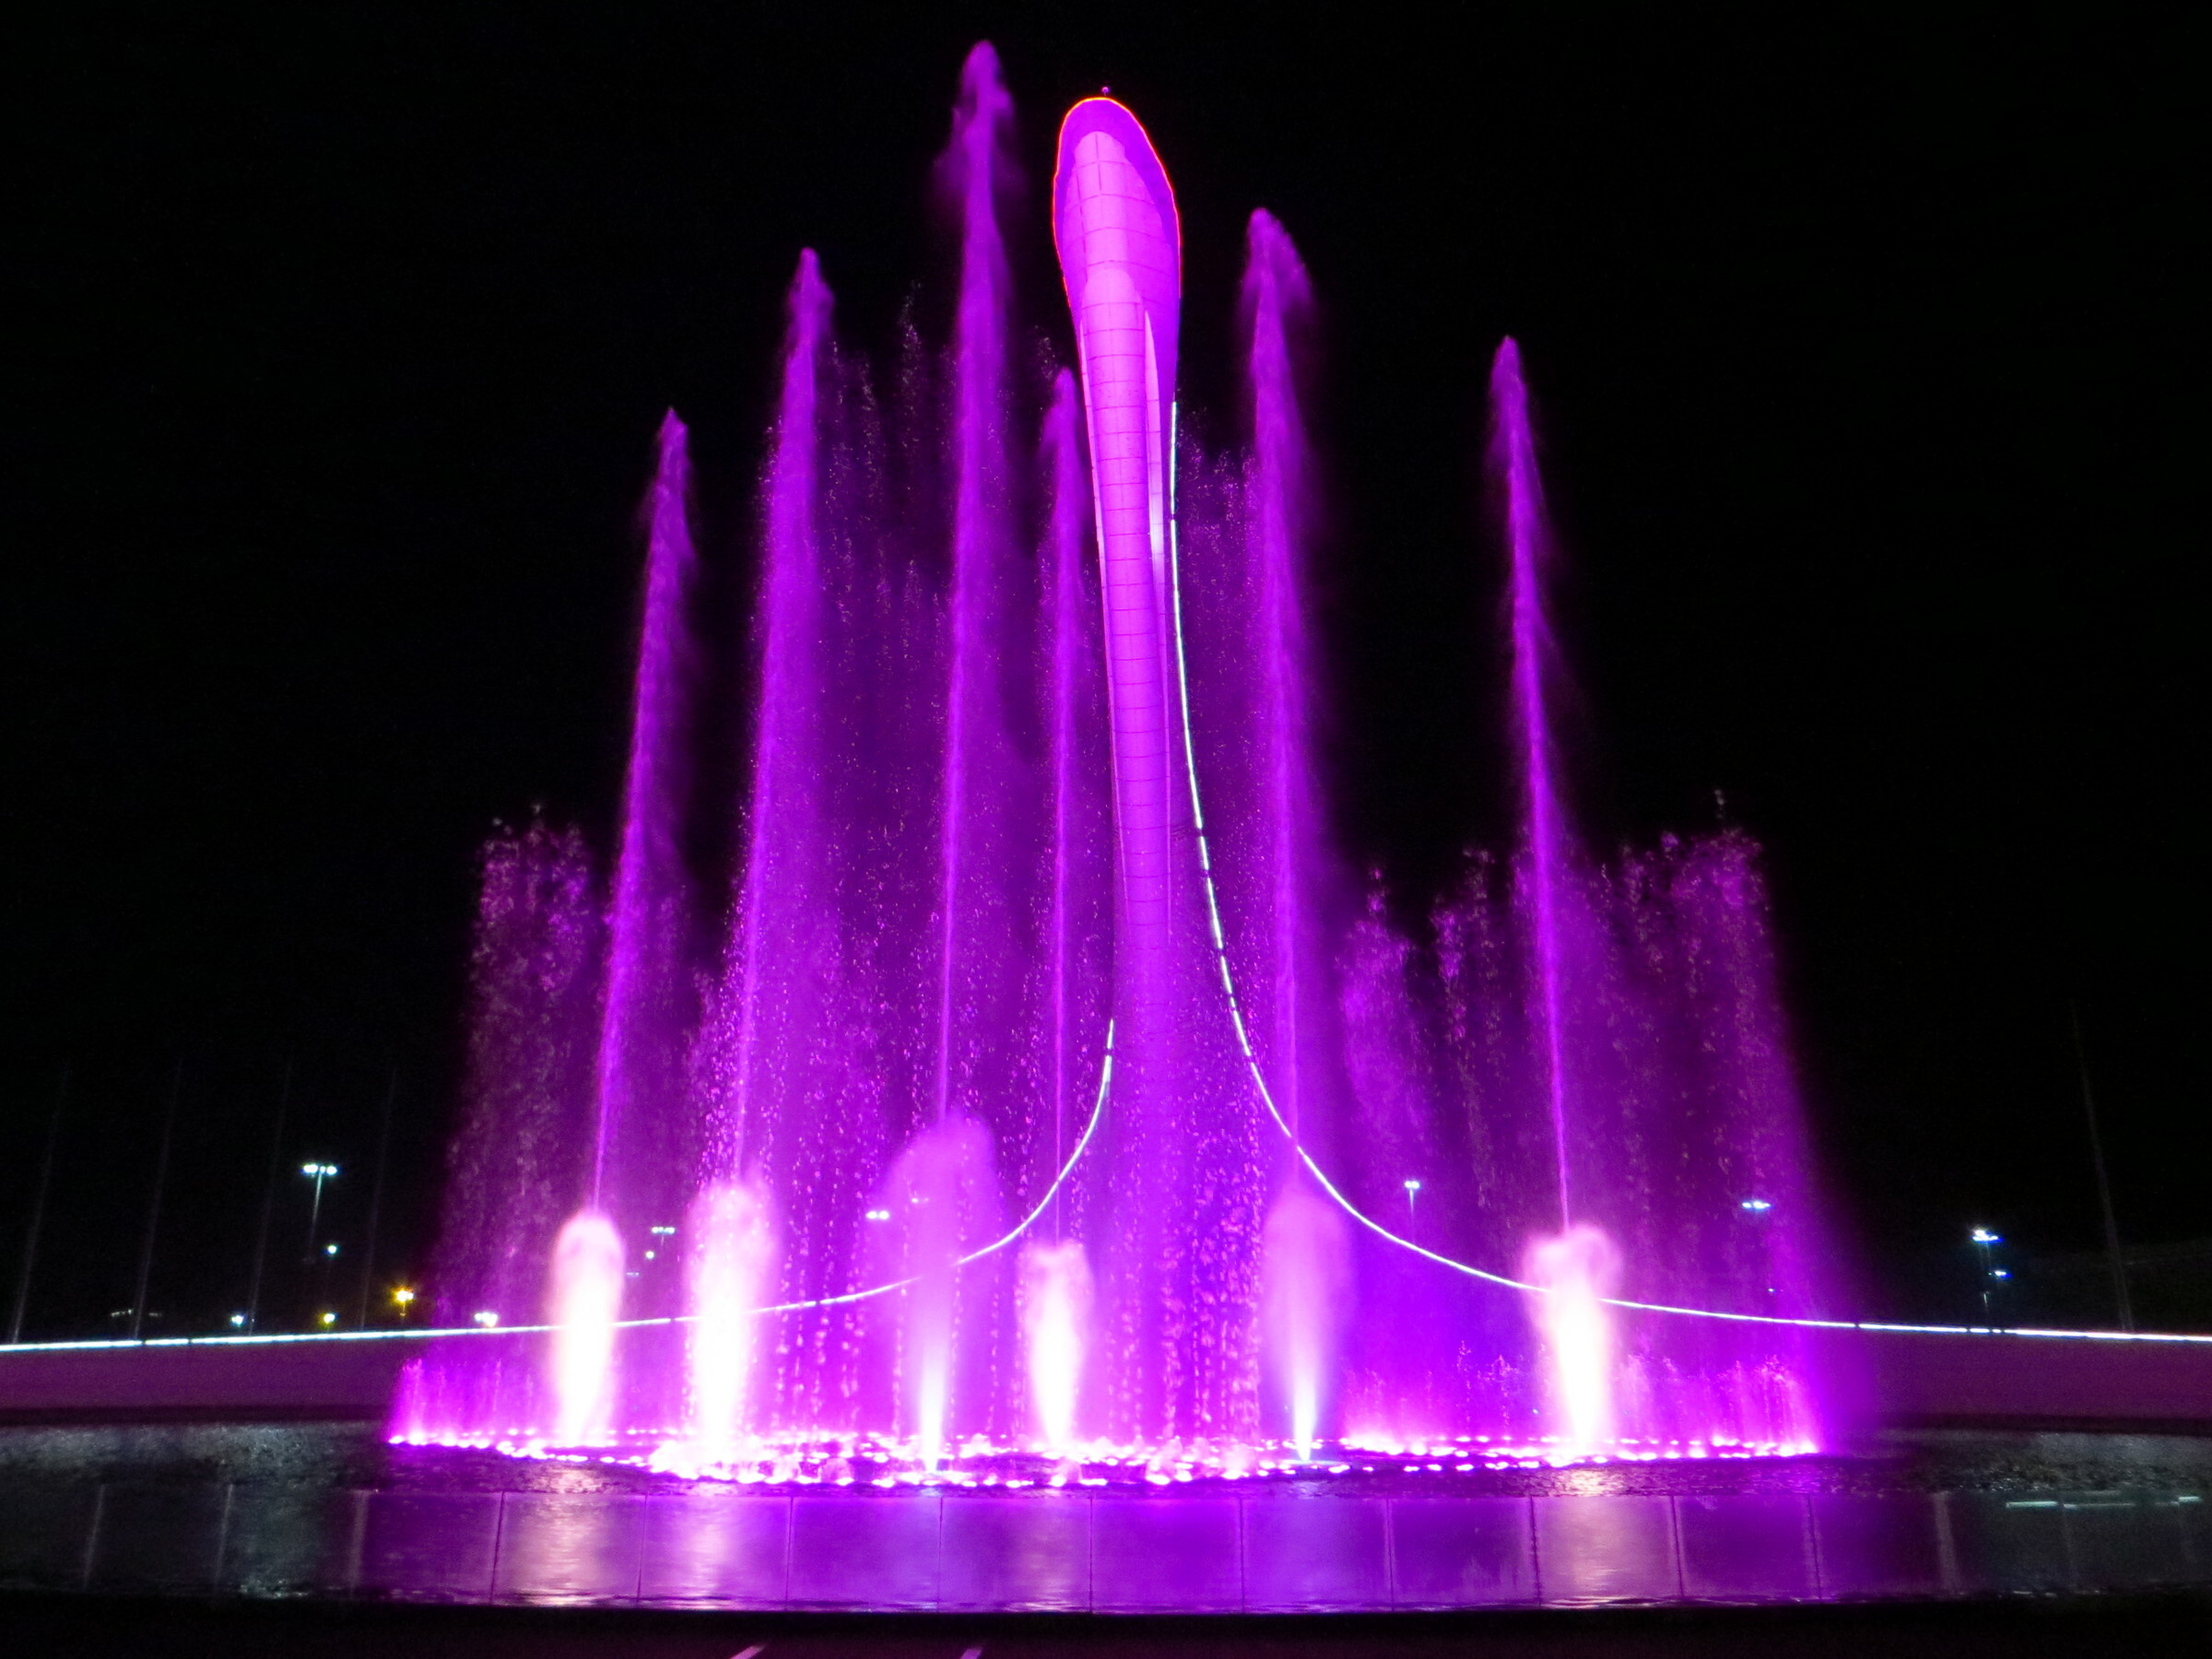 Олимпийский парк сегодня поющие фонтаны. Фонтан Сочи Олимпийский парк. Шоу фонтанов Олимпийский парк Сочи. Шоу поющих фонтанов в Олимпийском парке Сочи. Поющий фонтан Адлер Олимпийский парк.